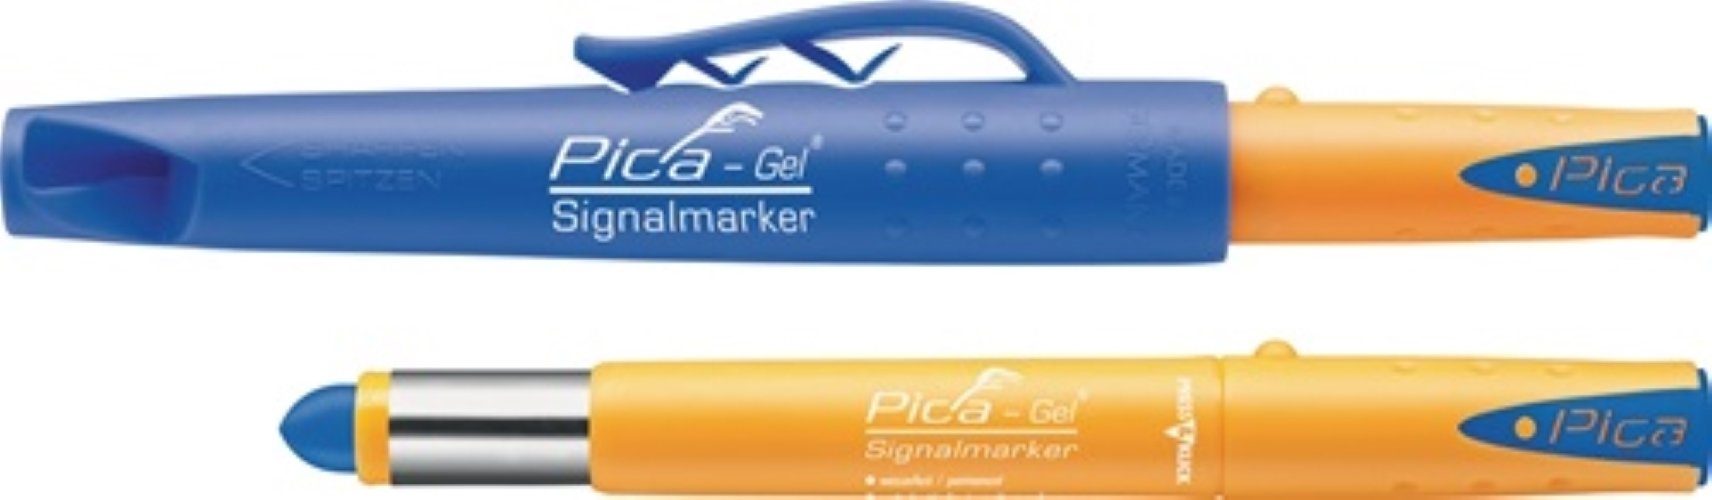 wasserfest markiert Pica Pica-Gel PICA ra und blau glatten Marker Signalmarker auf